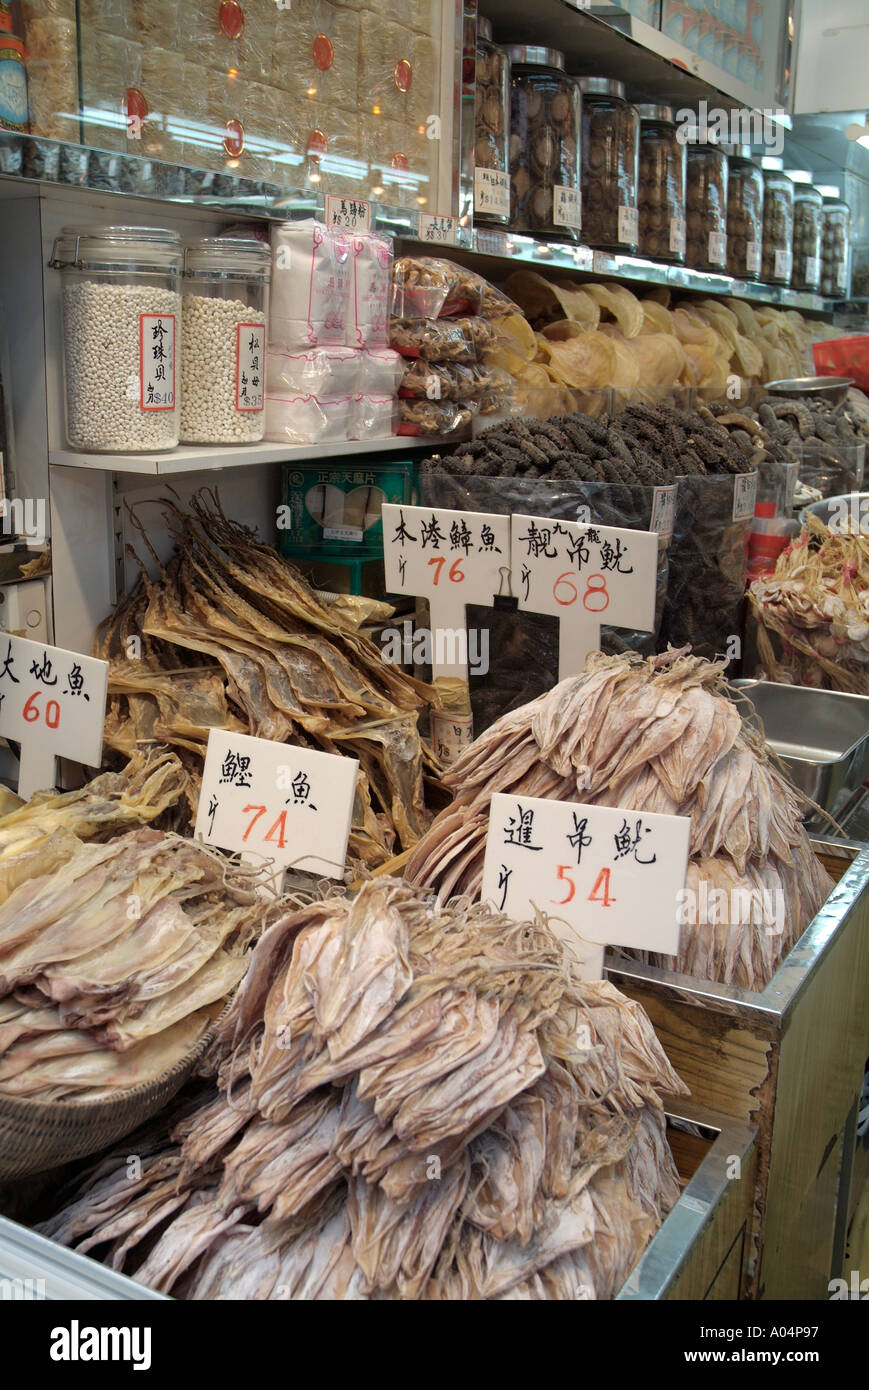 dh SHEUNG WAN HONG KONG exposition de la boutique de produits alimentaires pour poissons séchés prix de calligraphie des fruits de mer secs les aliments salés stockent le prix de la cale chinoise tags chine étiquette de marché Banque D'Images